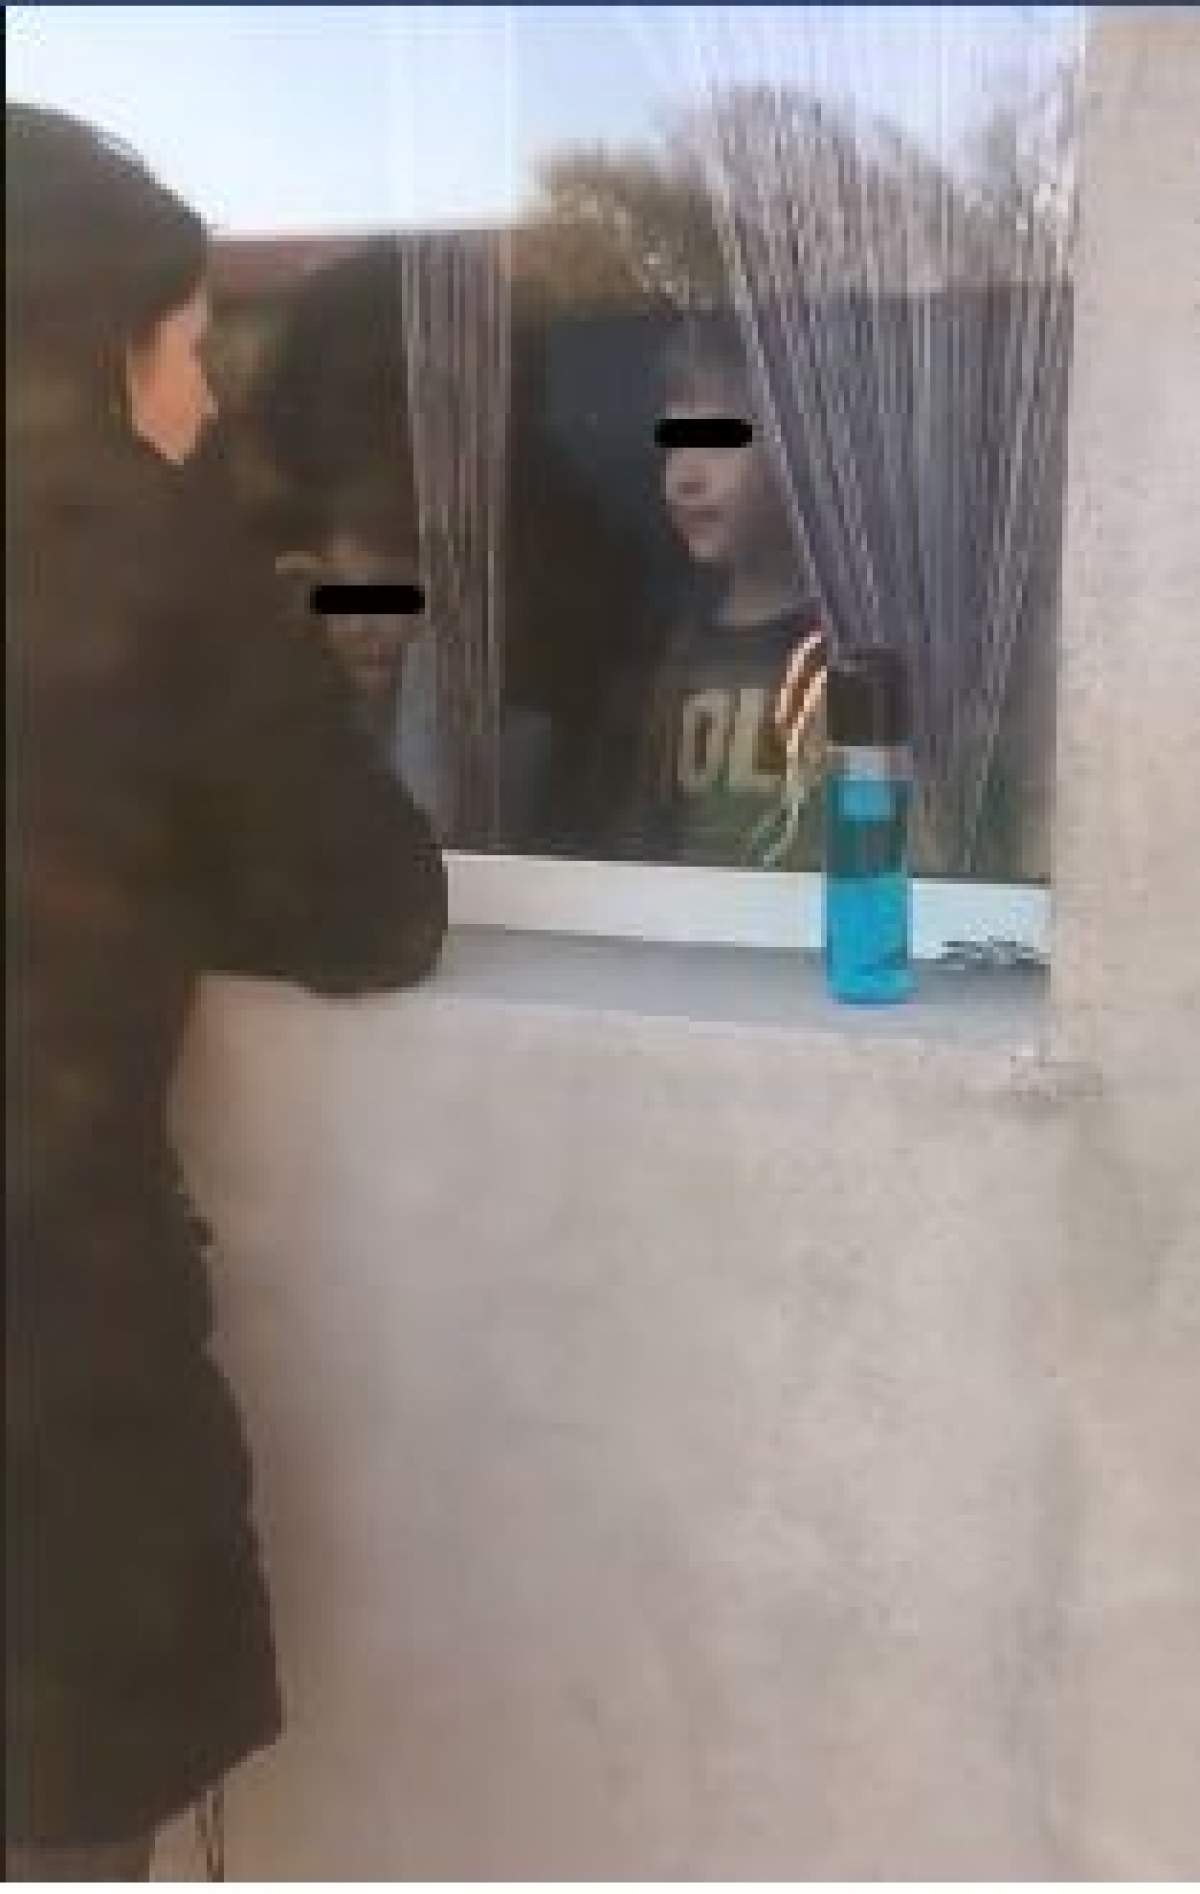 Imagini emoționante în Baie Mare. O asistentă din prima linie și soțul ei își văd copiii doar de la fereastră / VIDEO